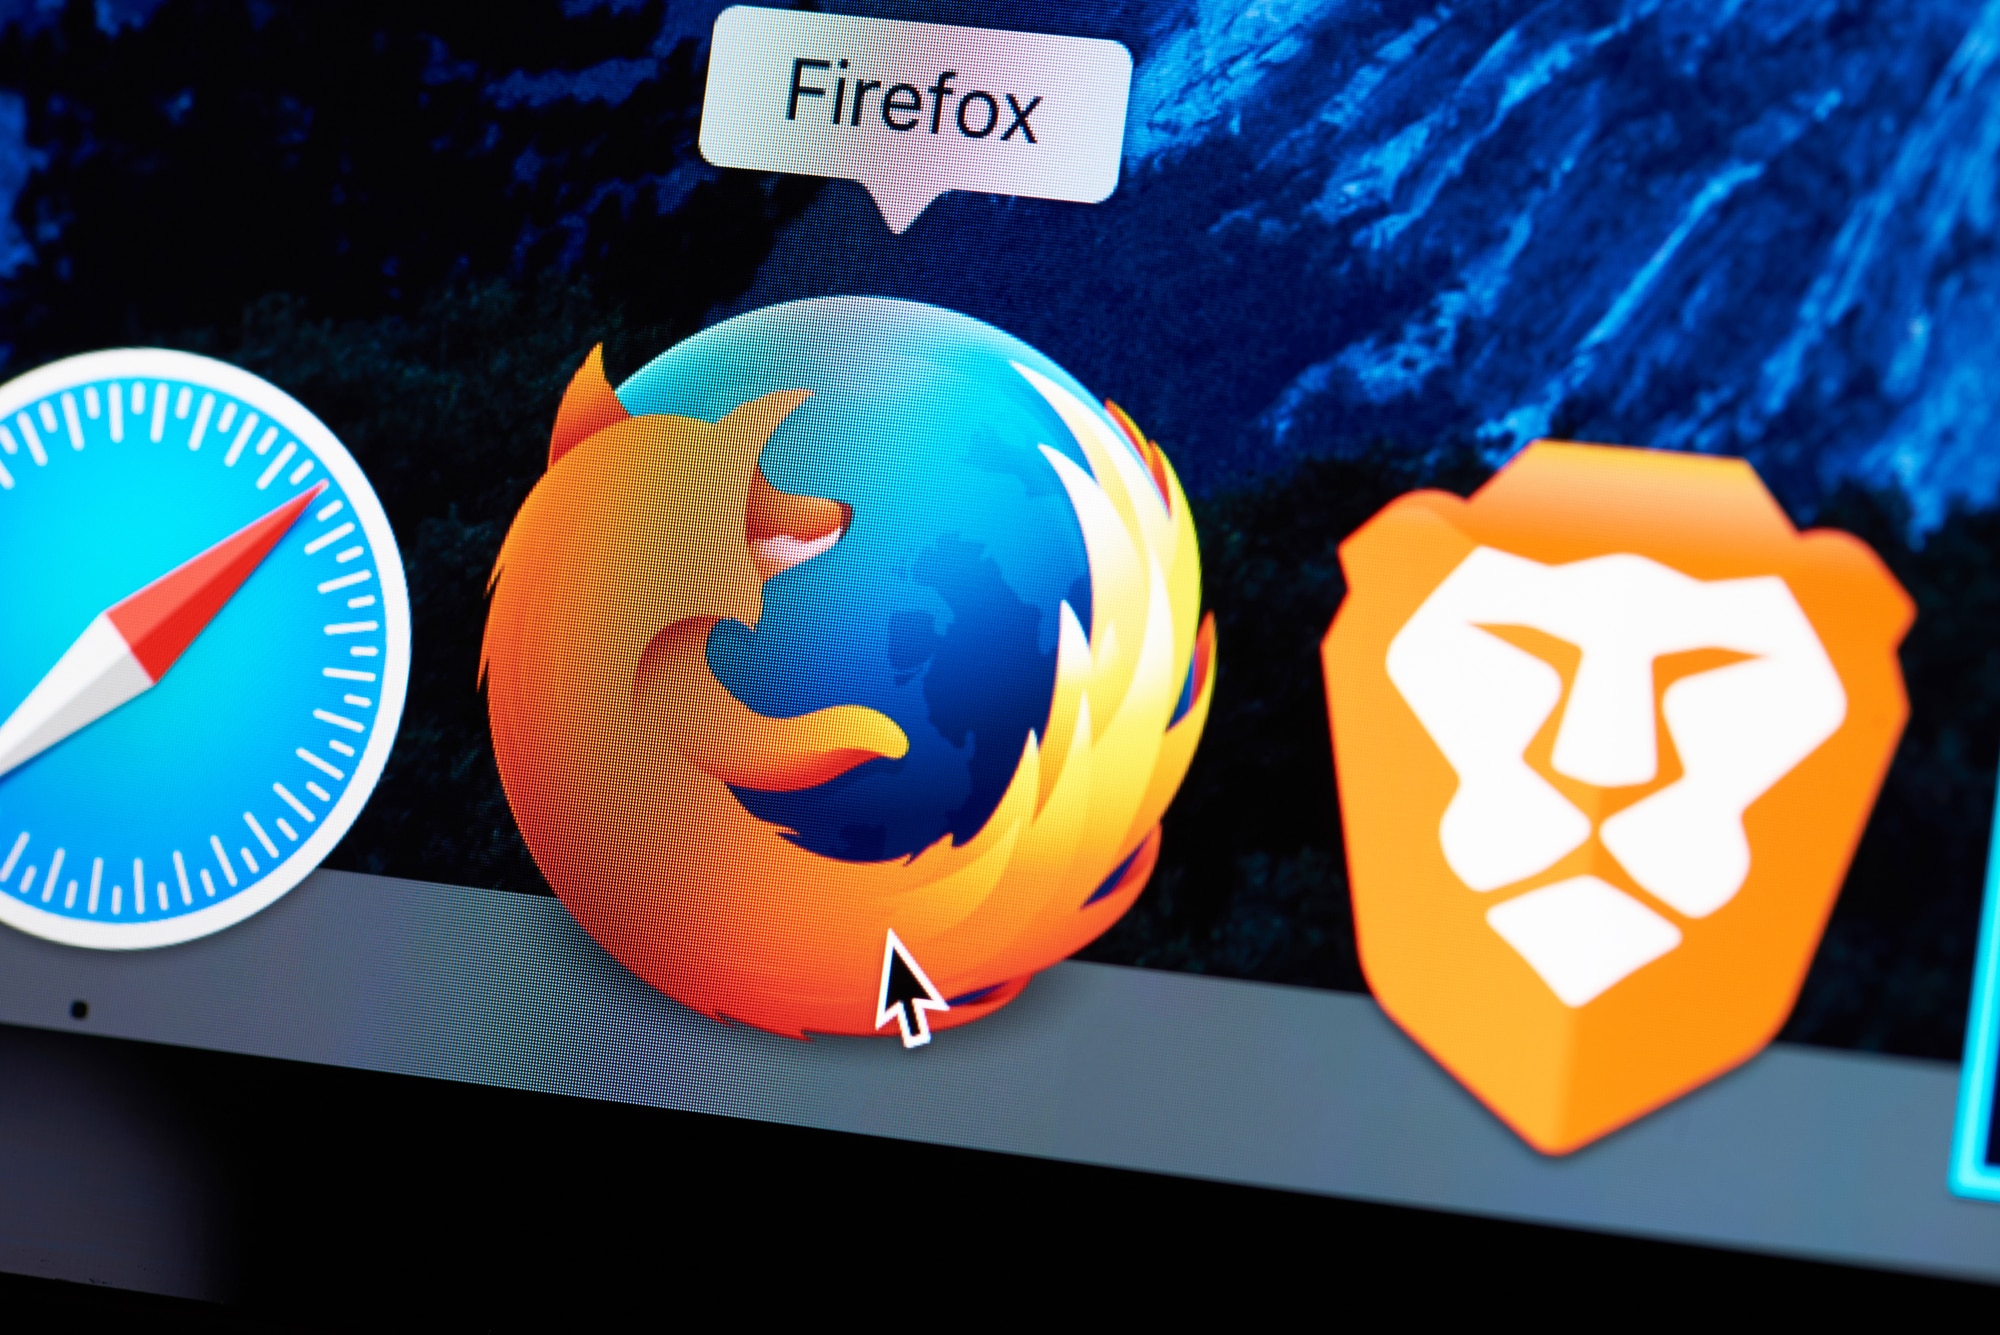 Comparaison de Brave et Firefox : caractéristiques et fonctionnalités uniques